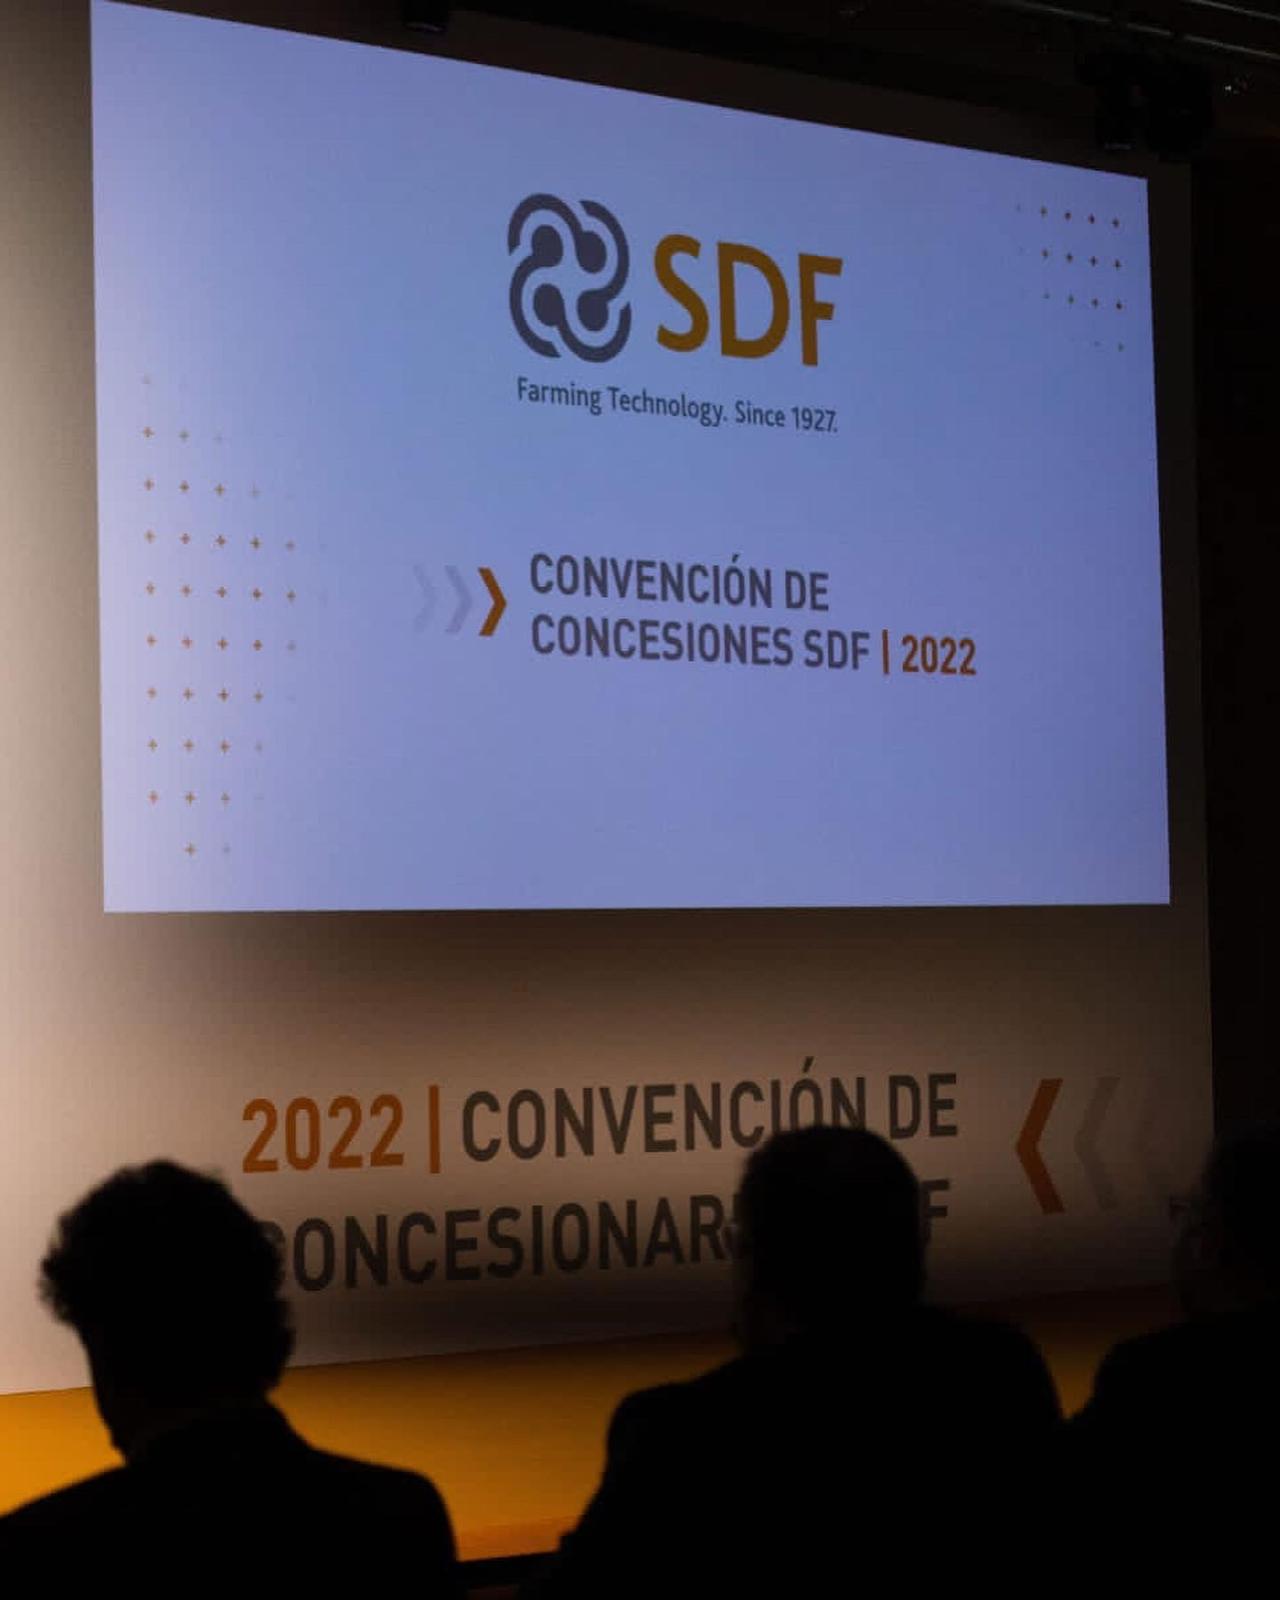  Convenció de Concessions SDF 2022 de Same, Deutz-Fahr i Lamborghini.